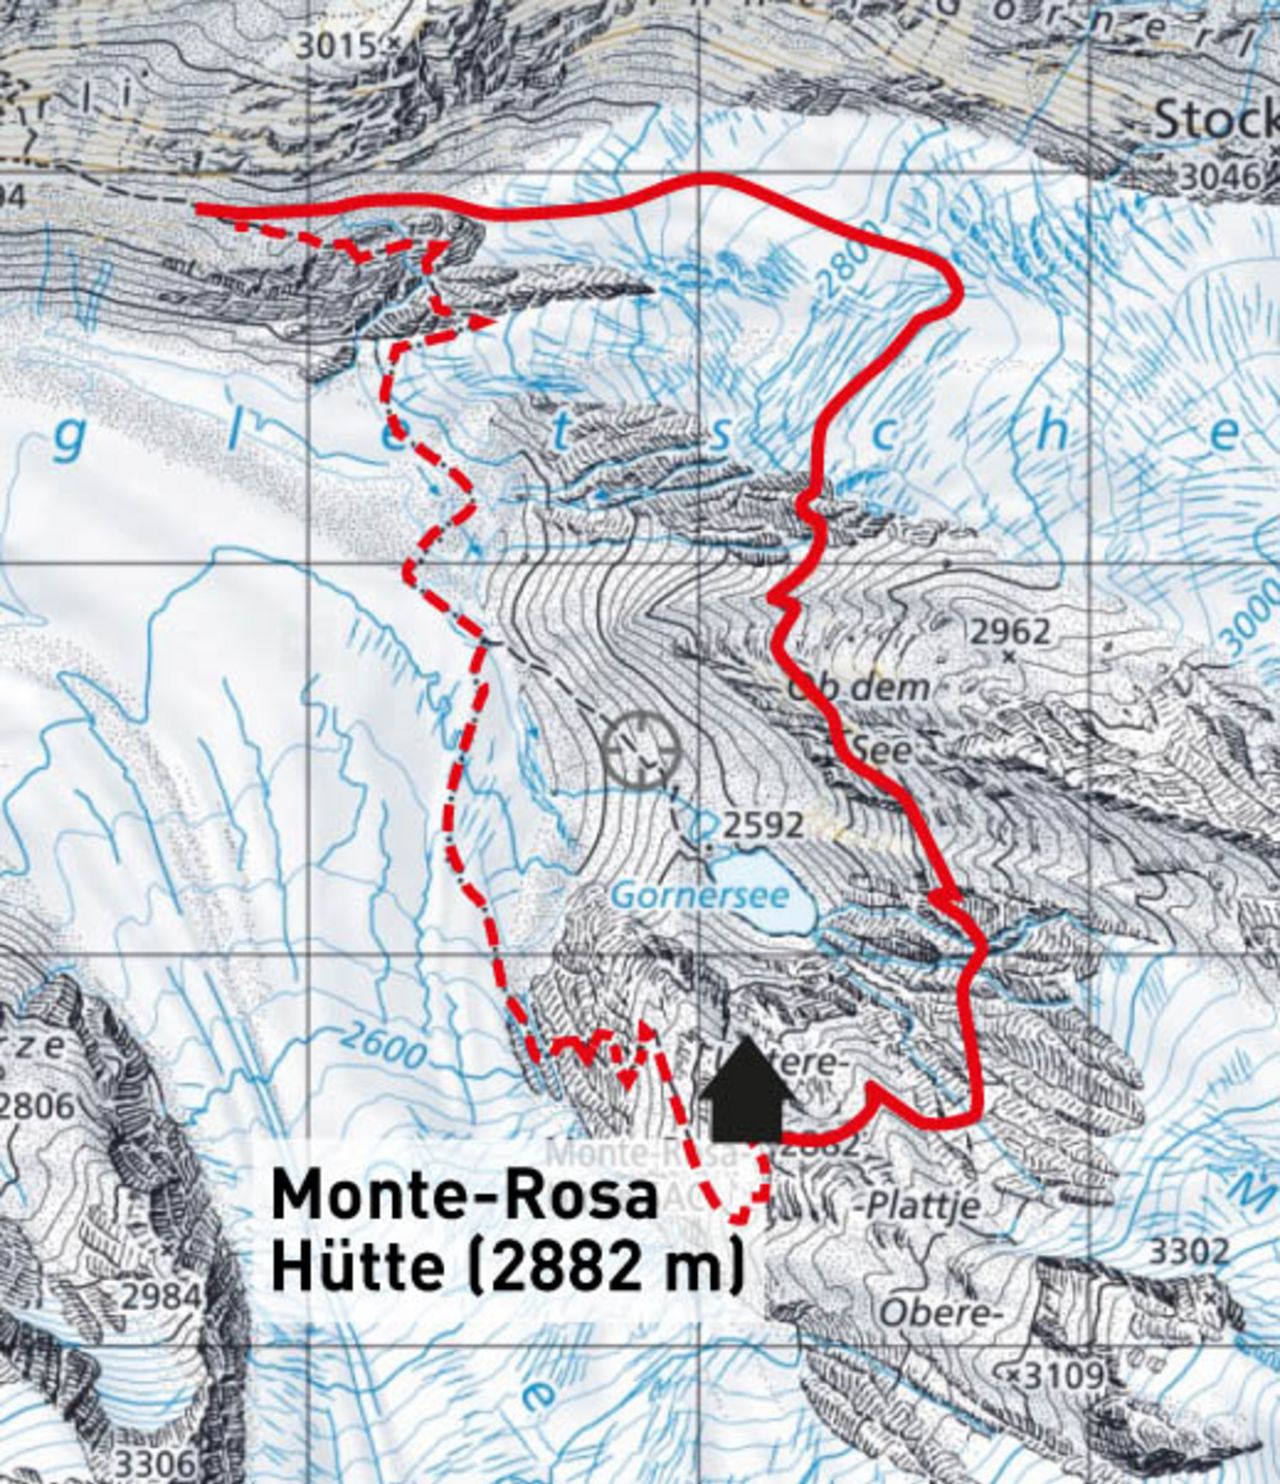 Neuer Weg zur Monte-Rosa-Hütte - Die Alpen | Schweizer Alpen-Club SAC